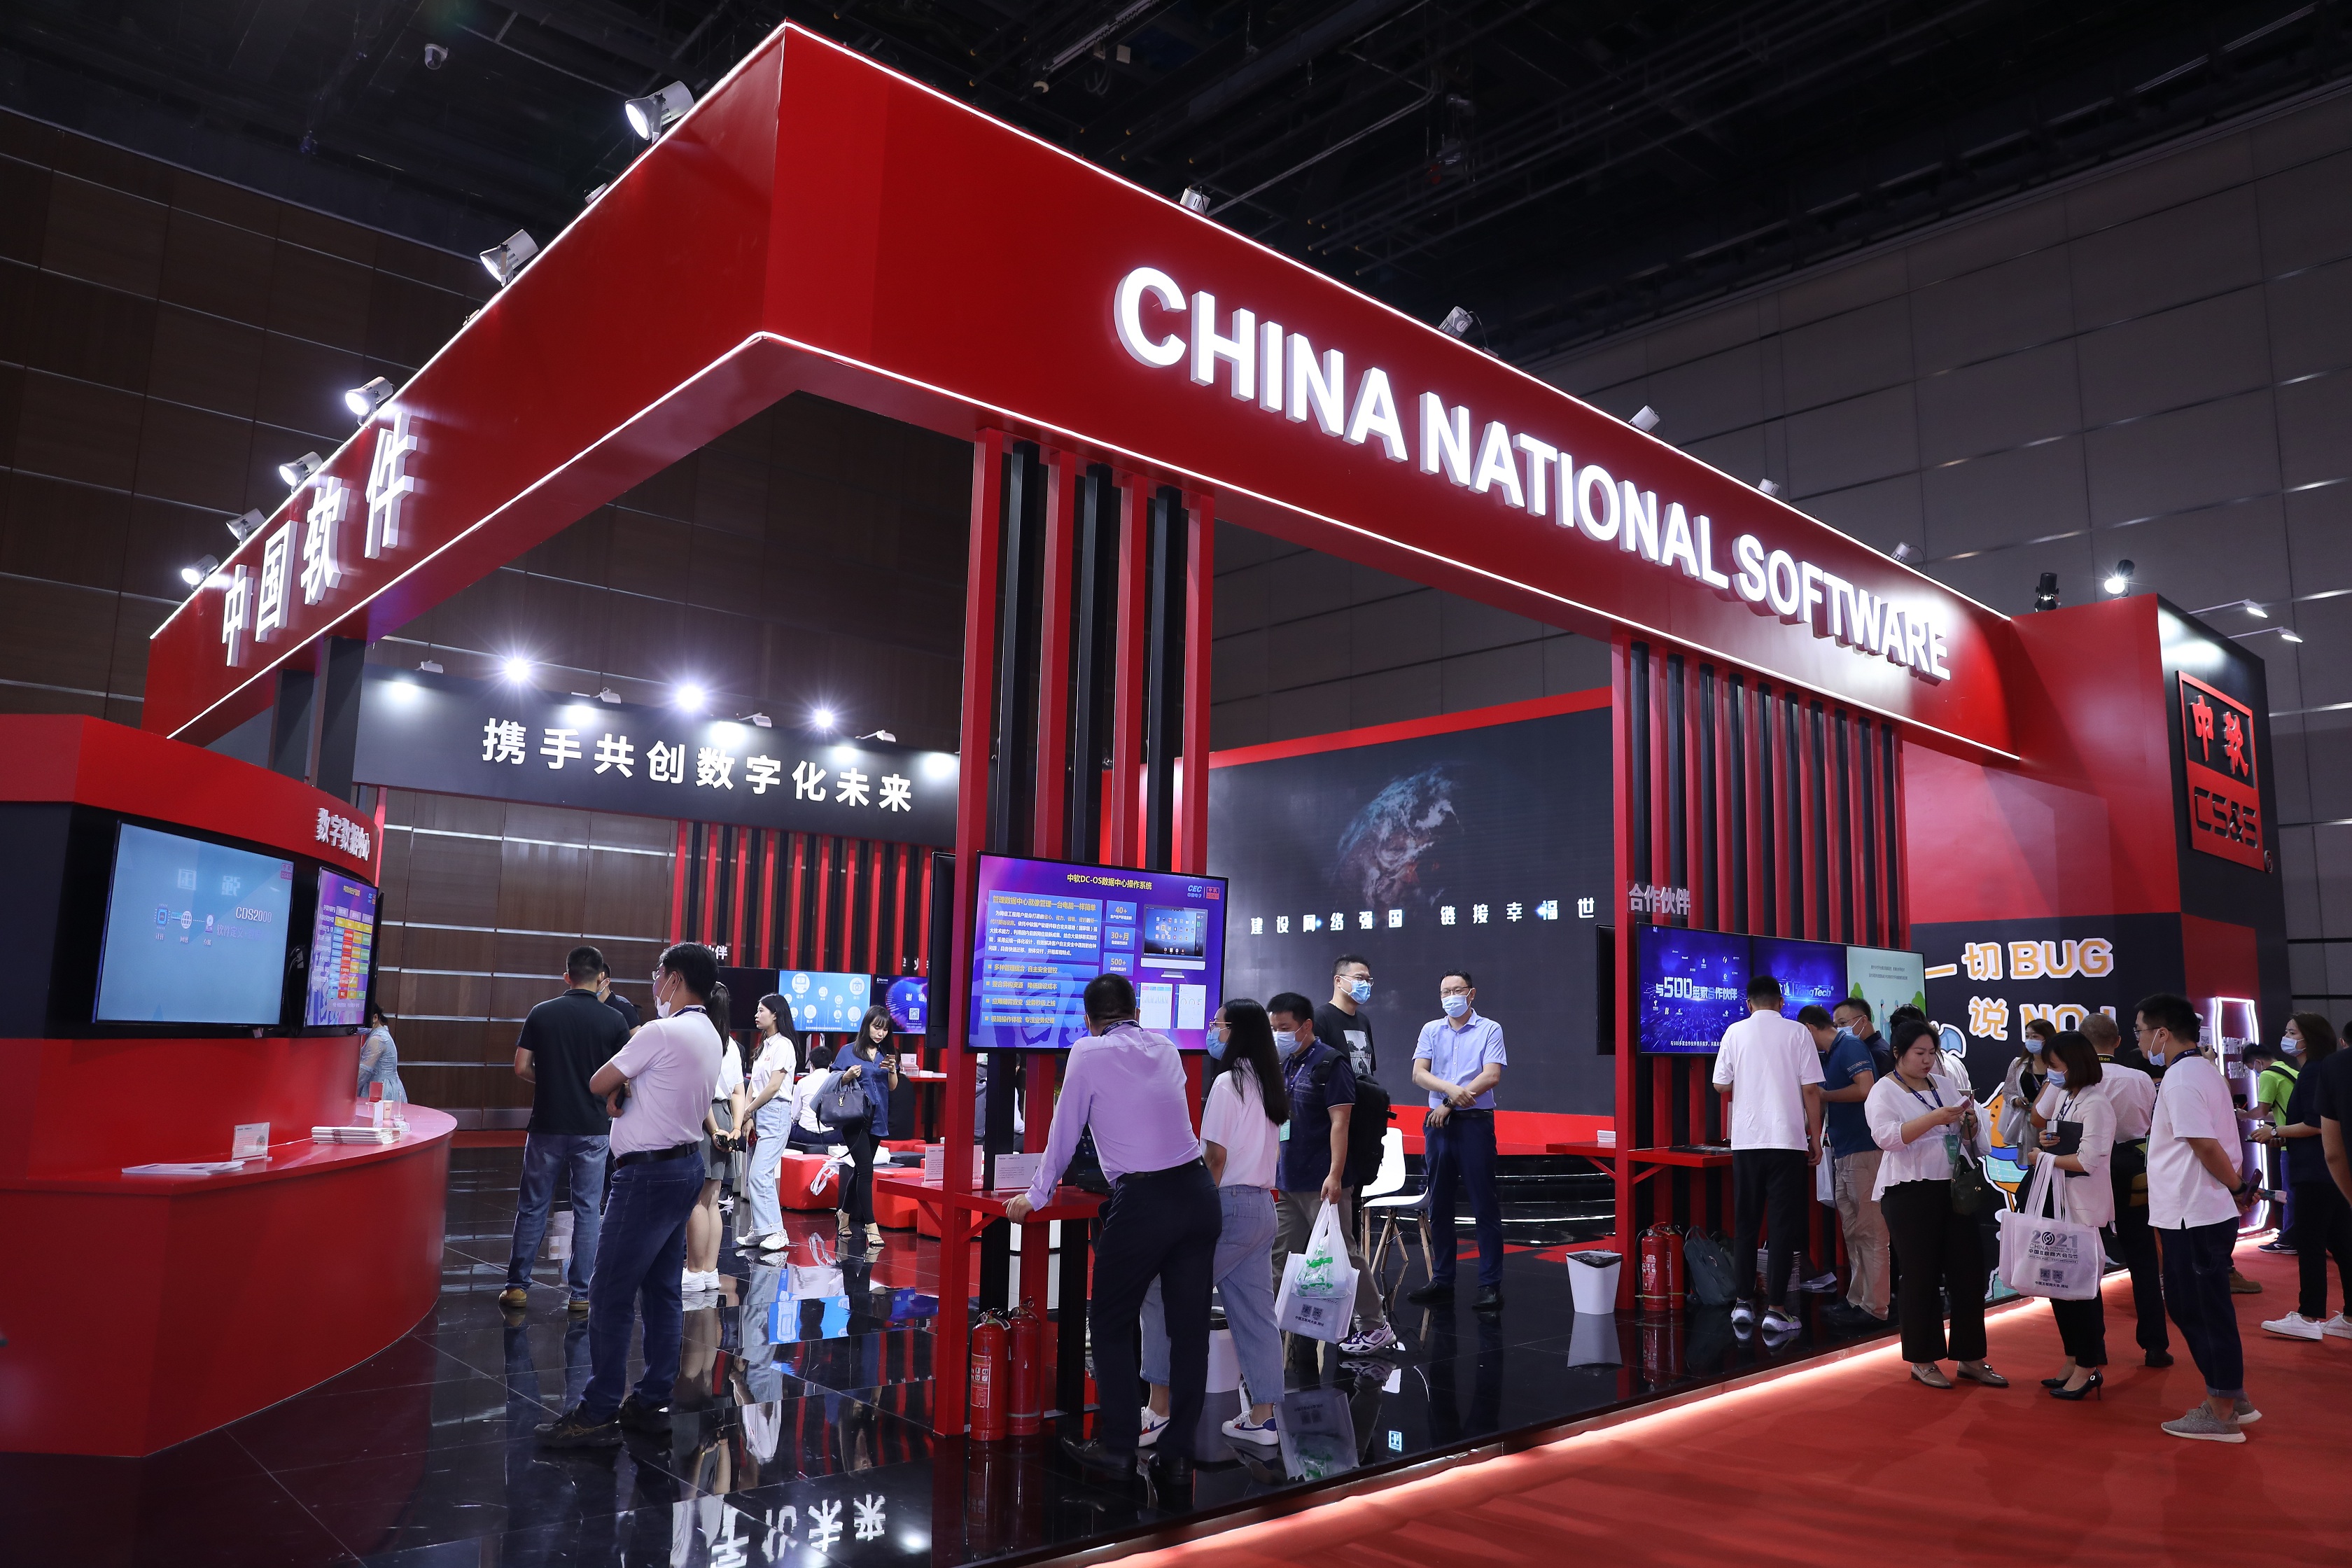 2022互联网技术与应用博览会将在2022 年11月15-17日将在深圳宝安国际会展中心举办